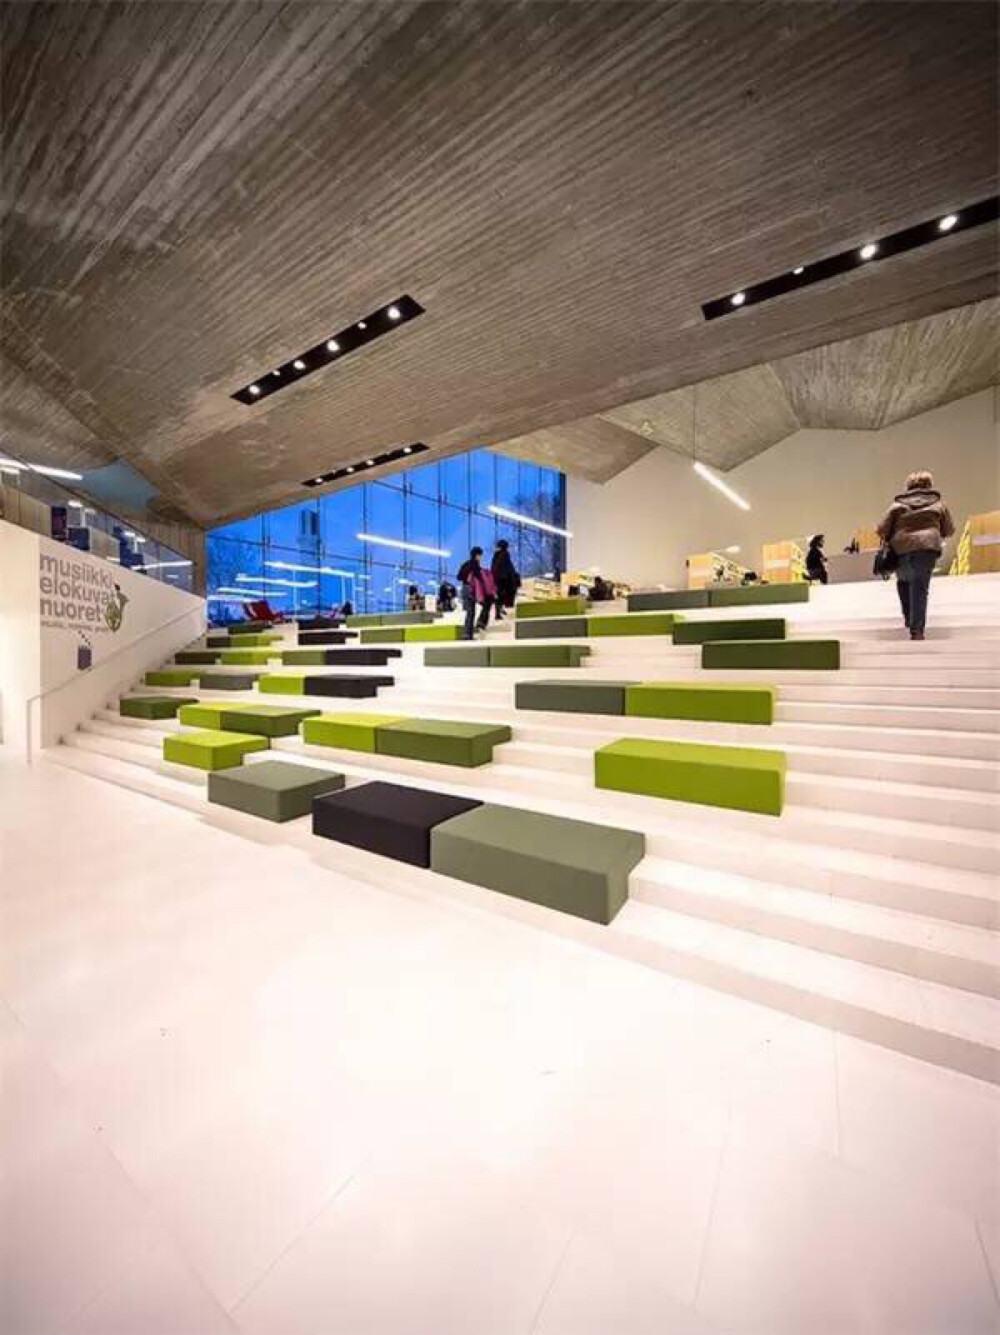 坐落于芬兰西部西芬兰省的图书馆设计。有超宽敞的阶梯式阅读空间，也有沉静的阅读室，以及让人兴奋的红隧道的私密空间，可以依心情，做深度阅读。爸爸妈妈也不用担心，里头有儿童游戏间，很北欧的苹果绿让人看了好心情。实在是很想去朝圣的地方。